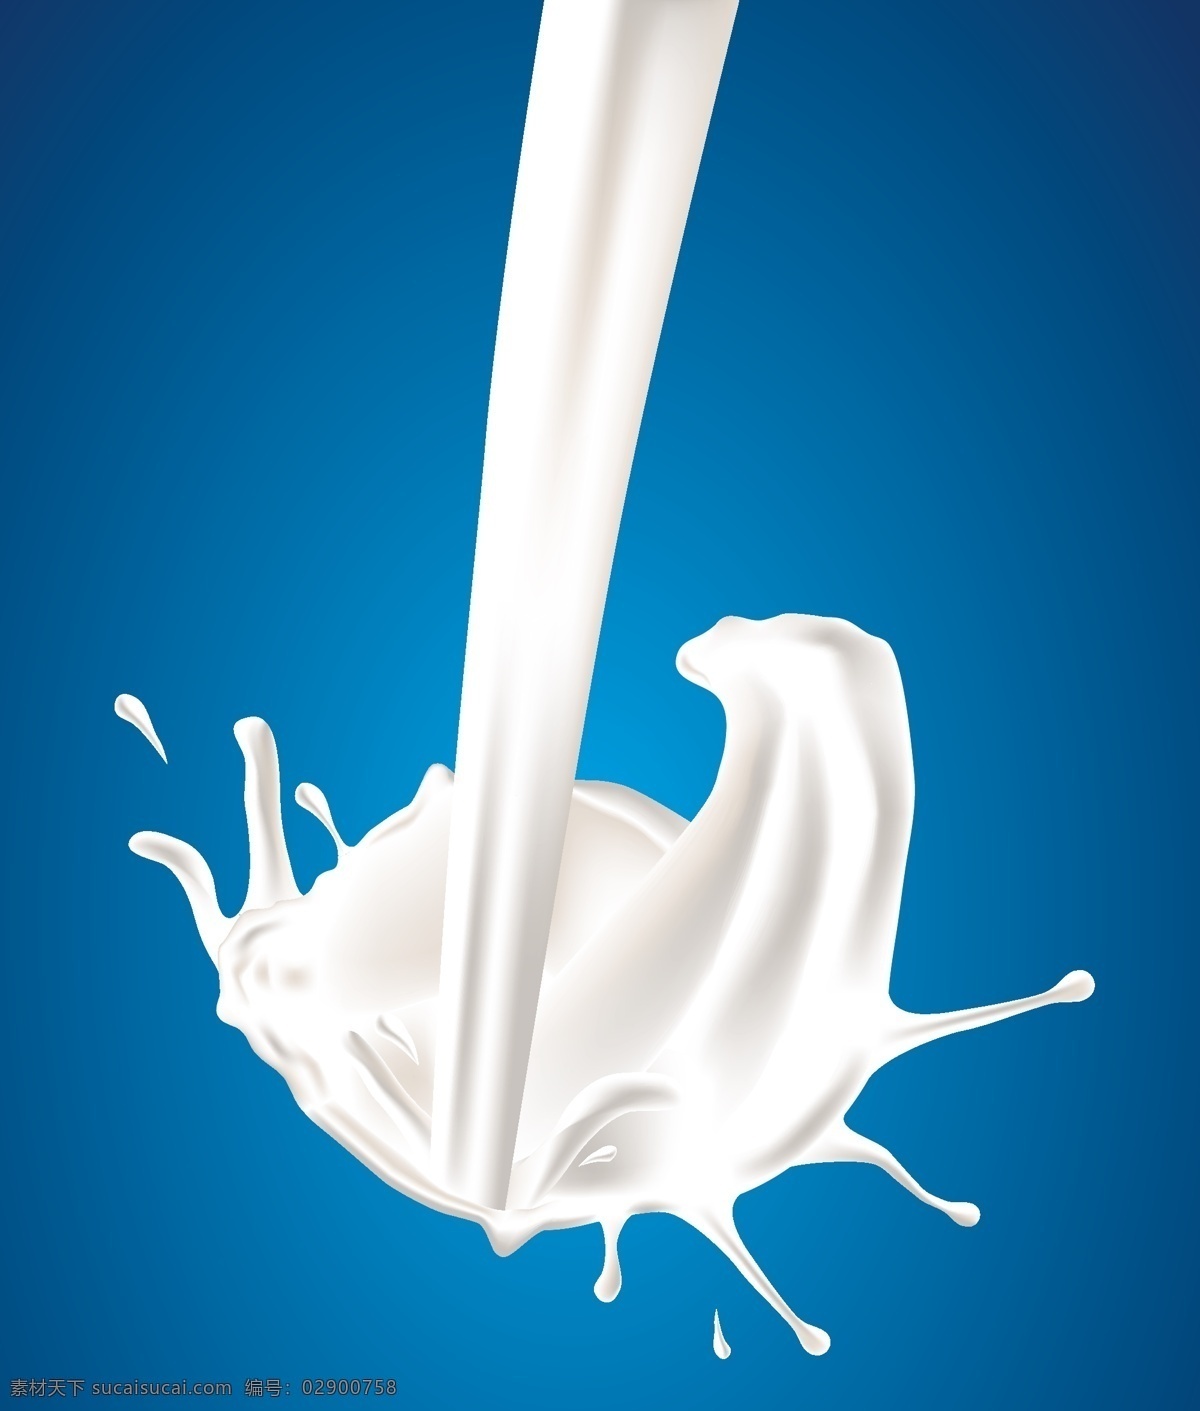 牛奶 喷溅 动感 动感牛奶 喷溅牛奶效果 喷溅牛奶 蓝色